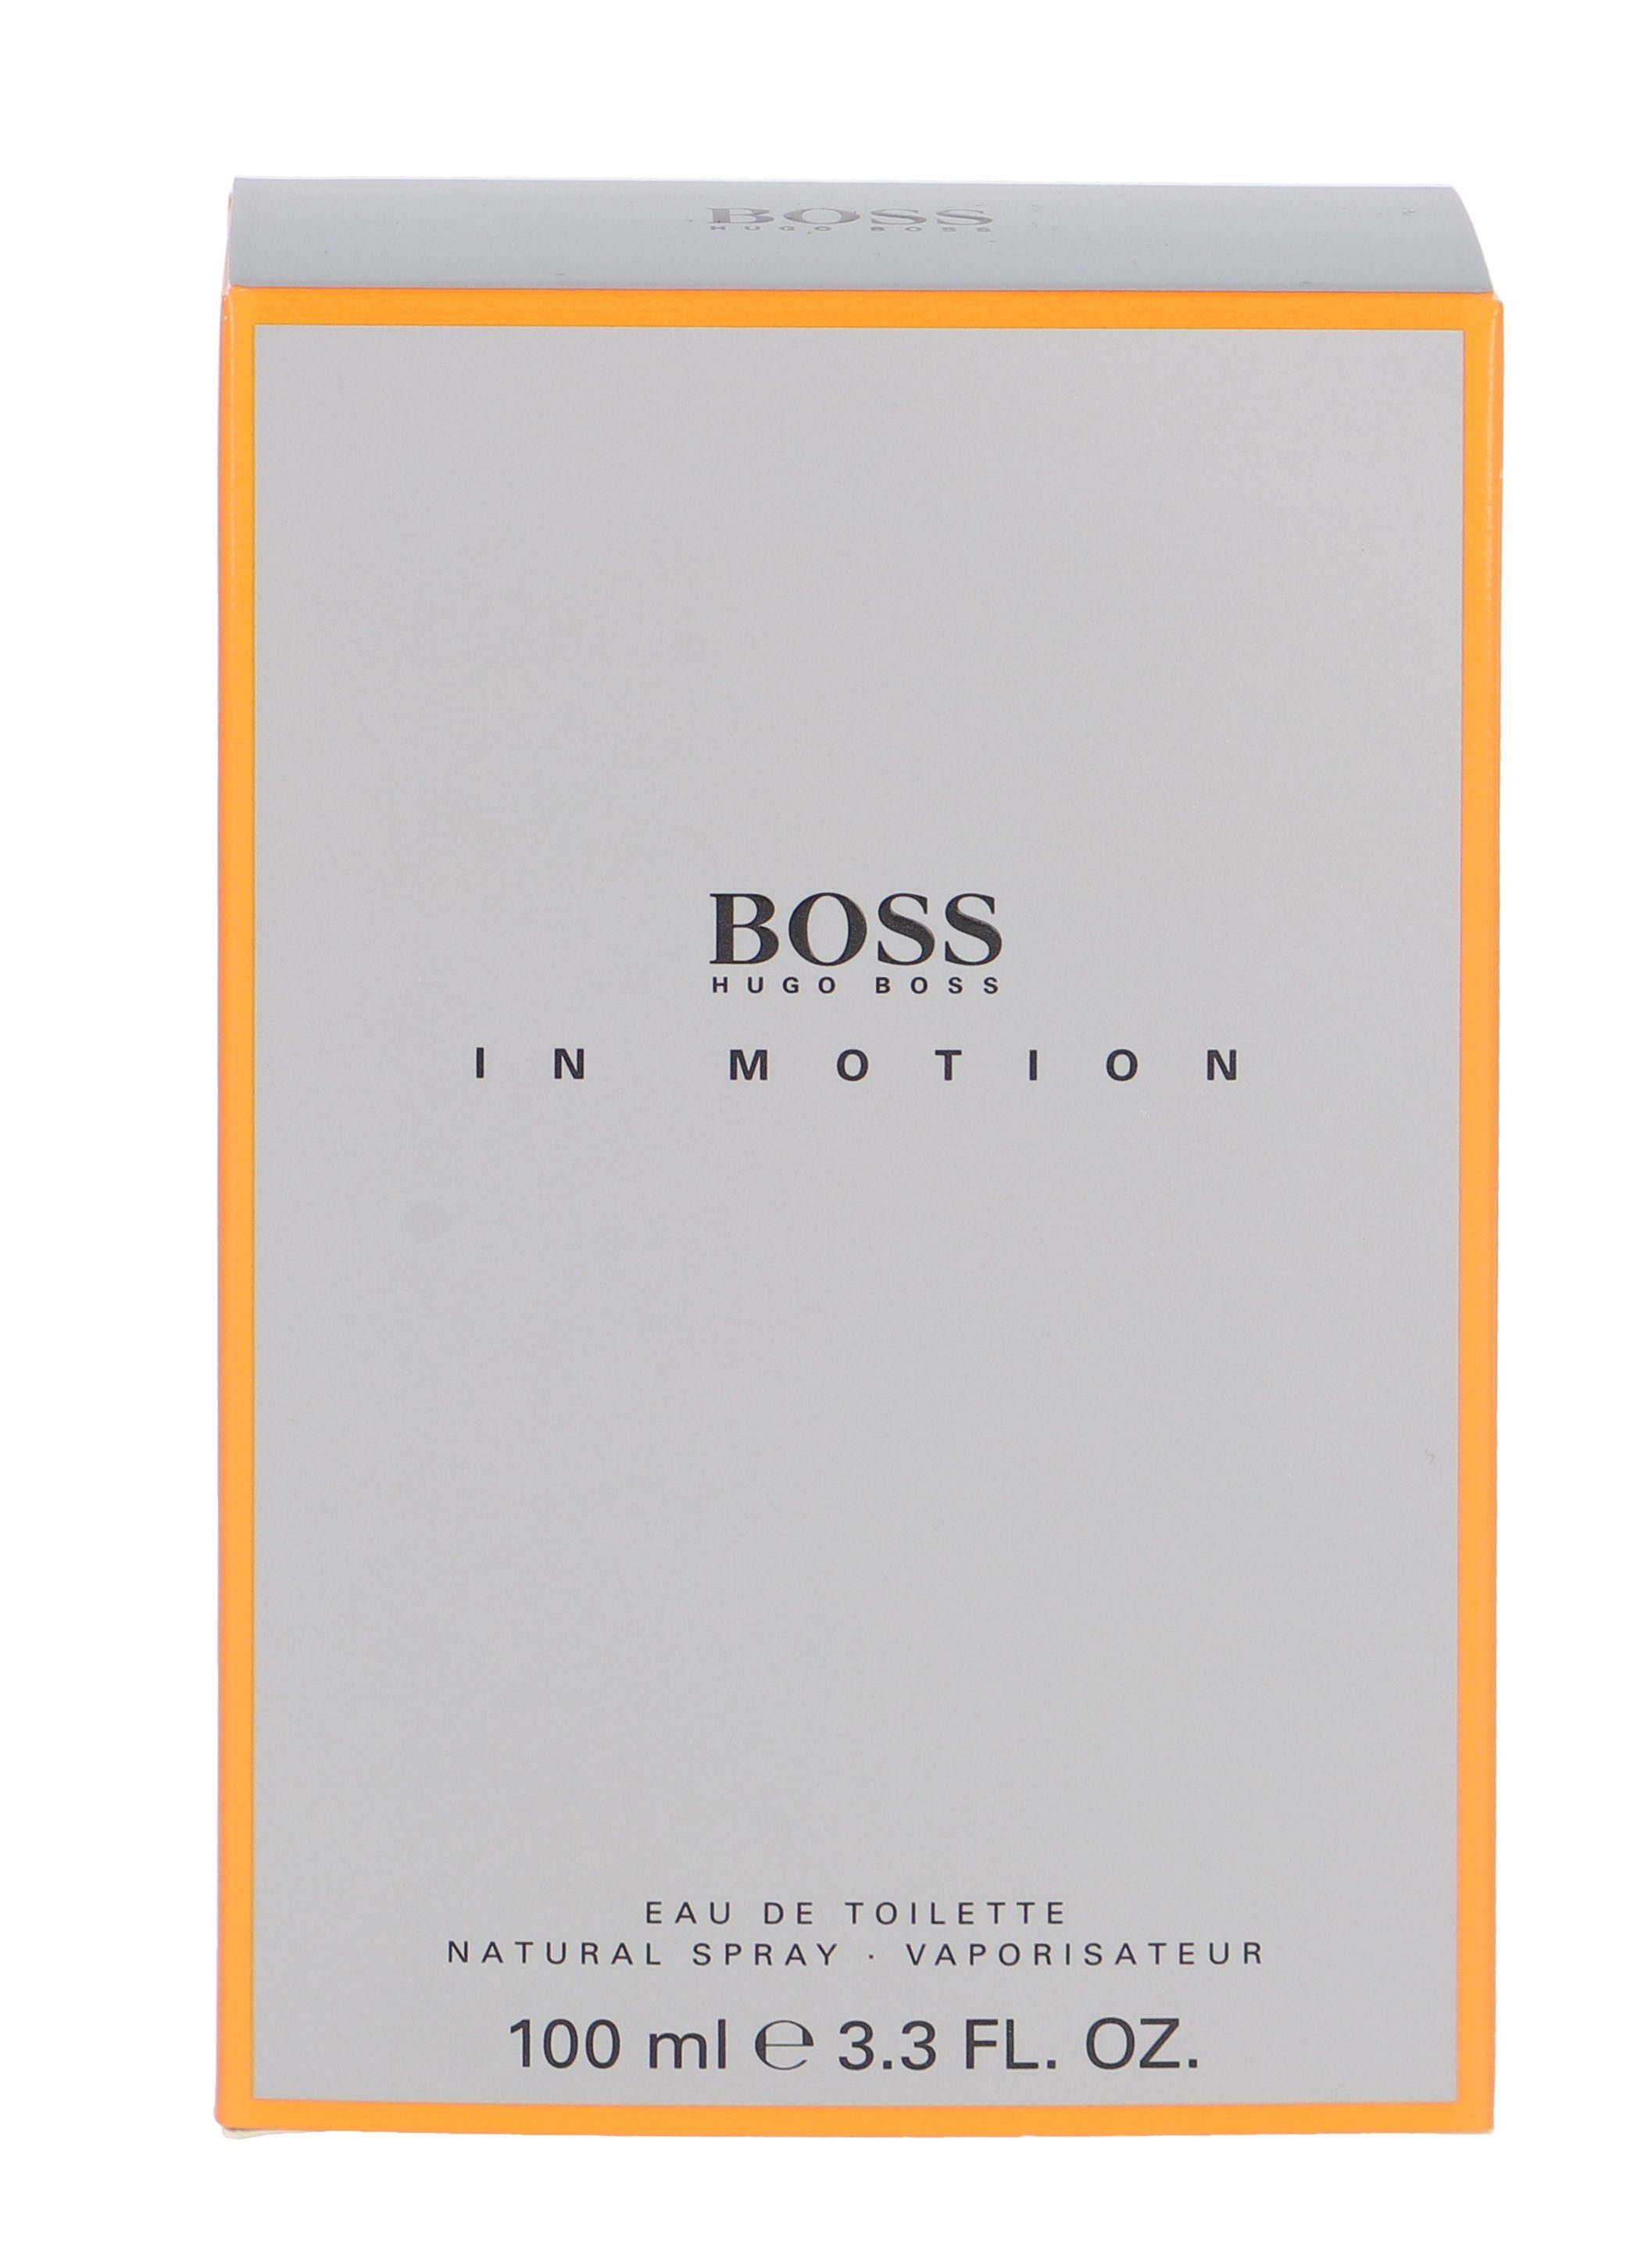 Hugo Boss Boss Motion de Home in BOSS Toilette Eau